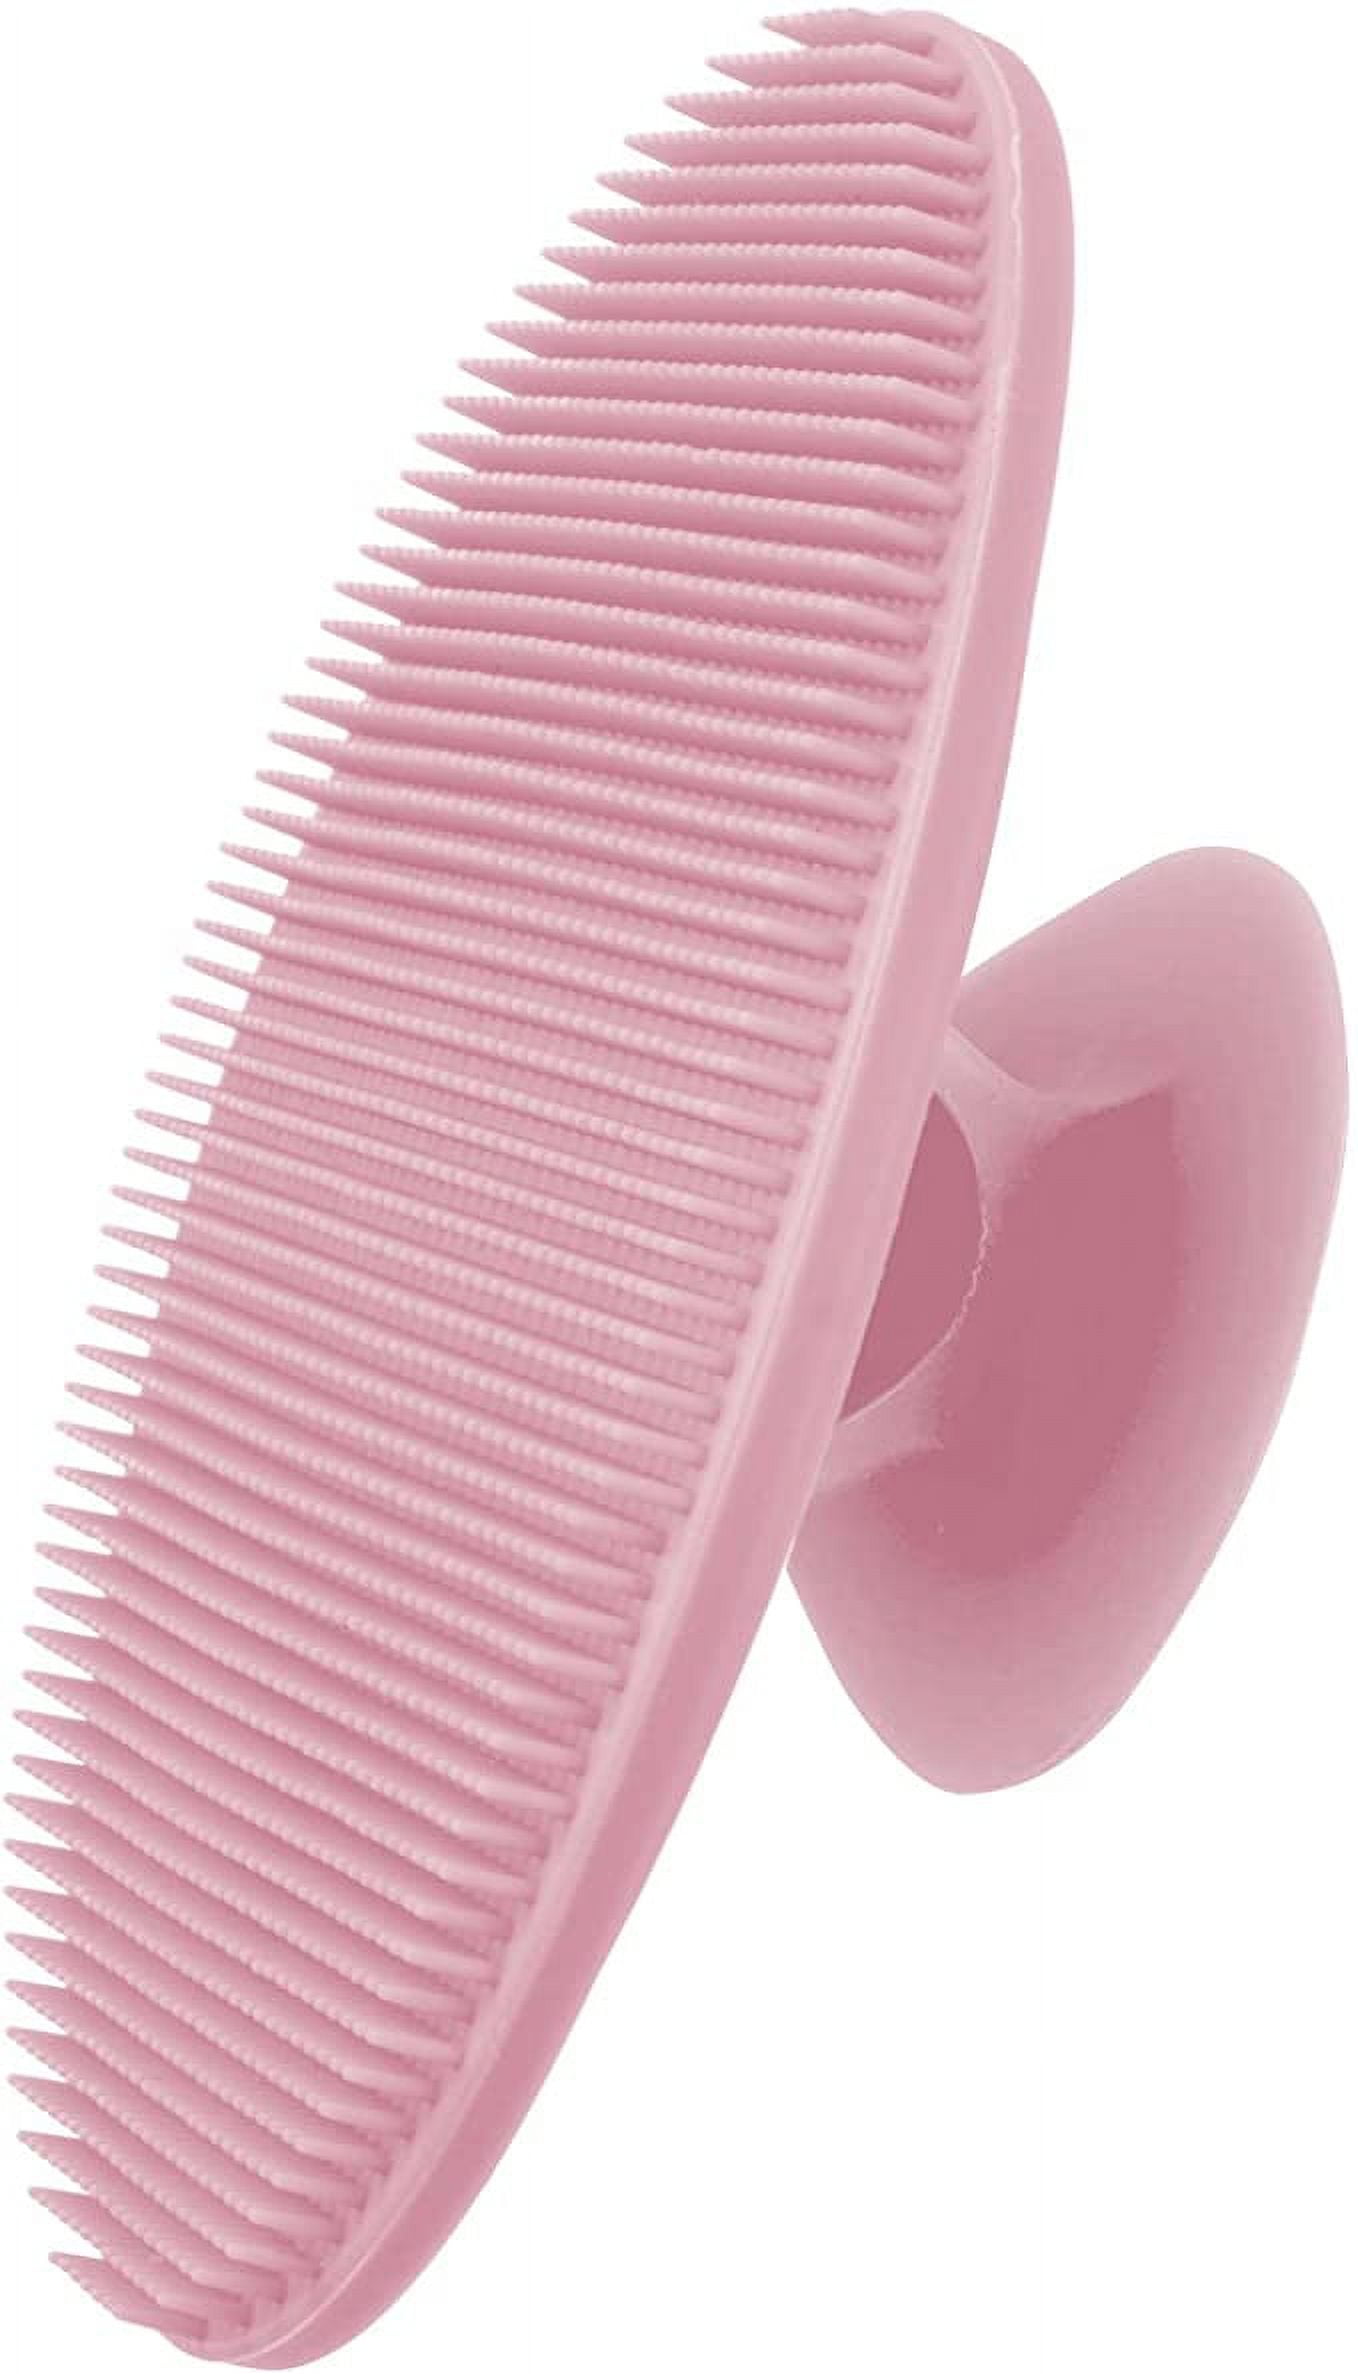 Pretty & Pink Soft Bristle Scrub Brush with Scraper - Scratch Free Cleaning